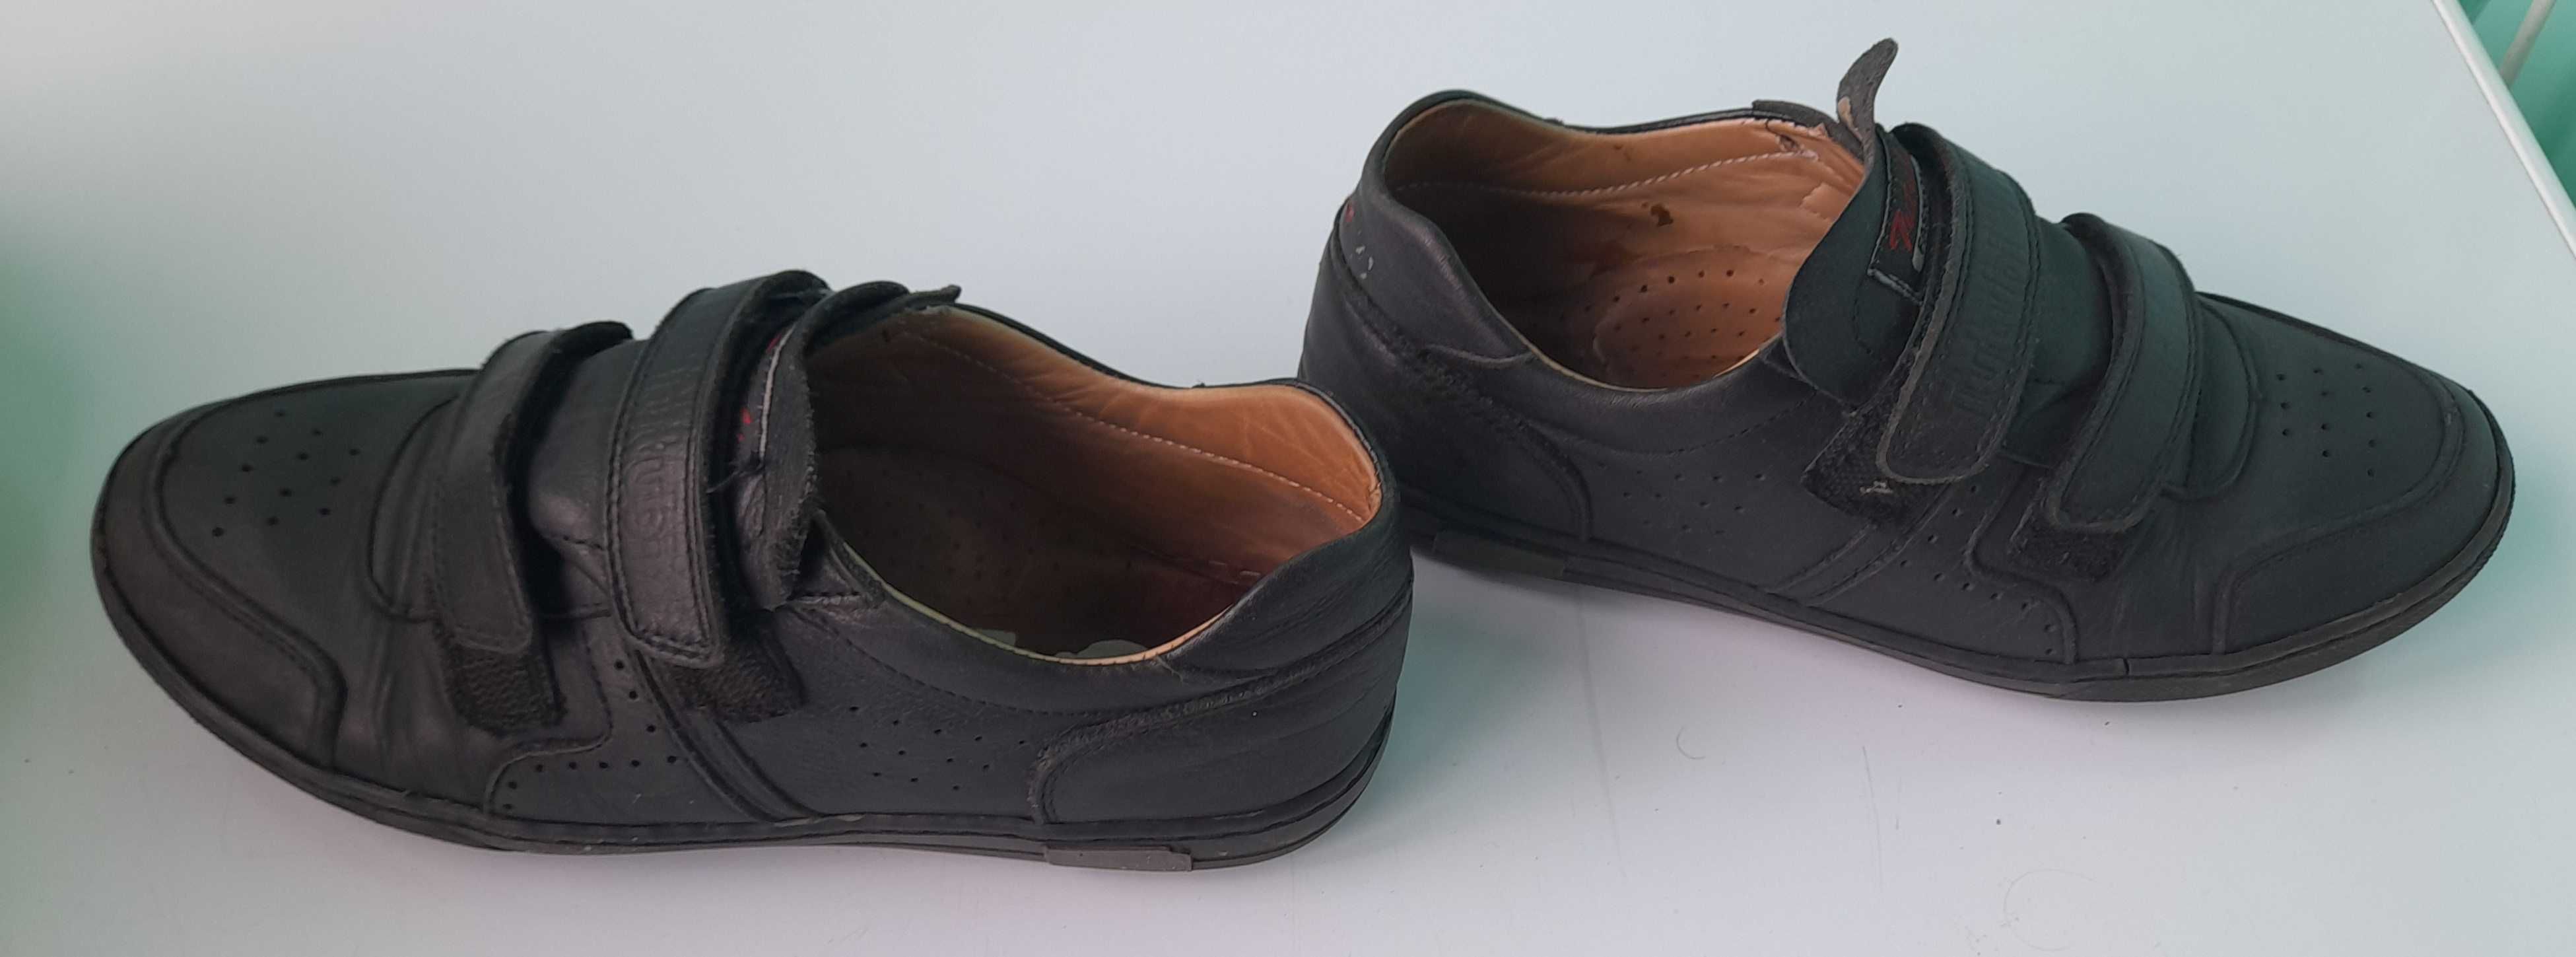 Туфли на липучках для мальчика кожа 36 размер, стелька 23 см